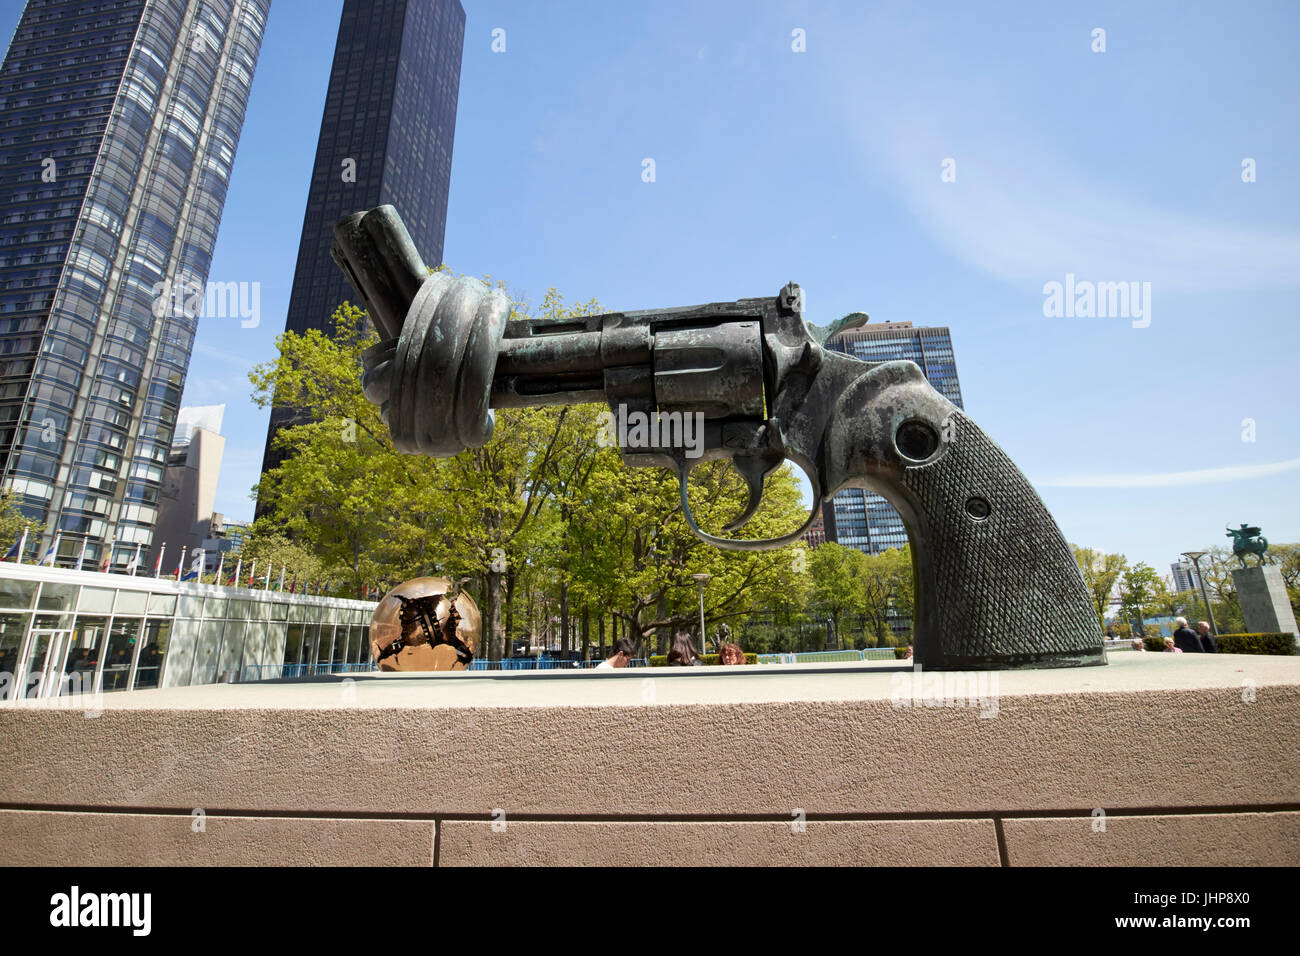 Legato canna della pistola non-violenza scultura nella motivazione delle Nazioni Unite di New York City STATI UNITI D'AMERICA Foto Stock